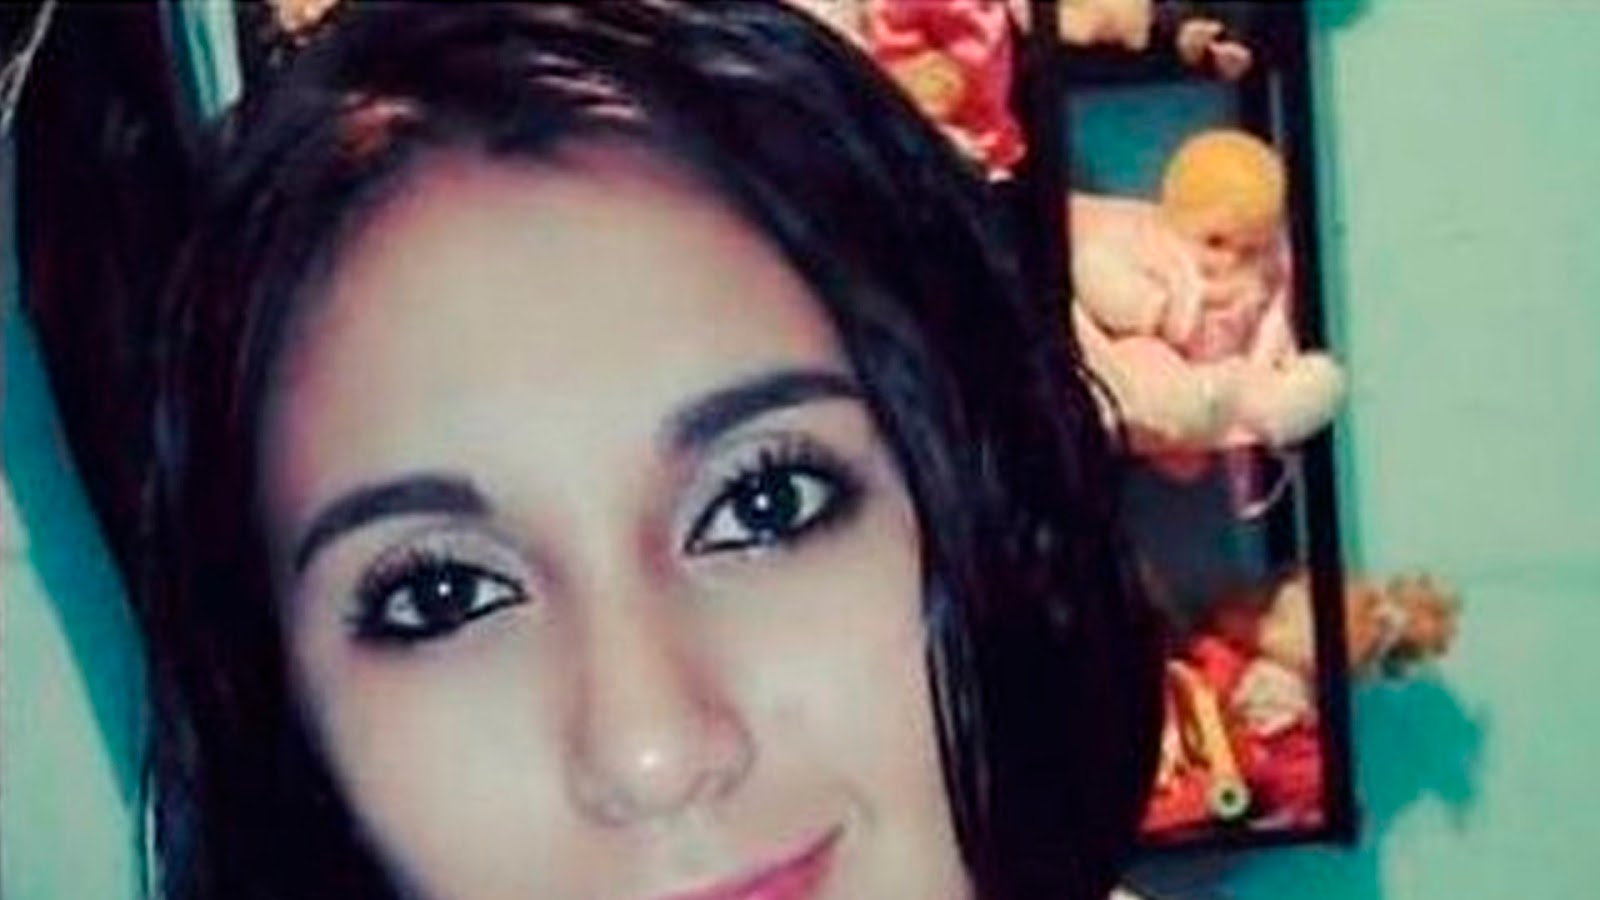 Hallan a Anayeli de 19 años sin vida en una barranca en Veracruz tras dos días desaparecida